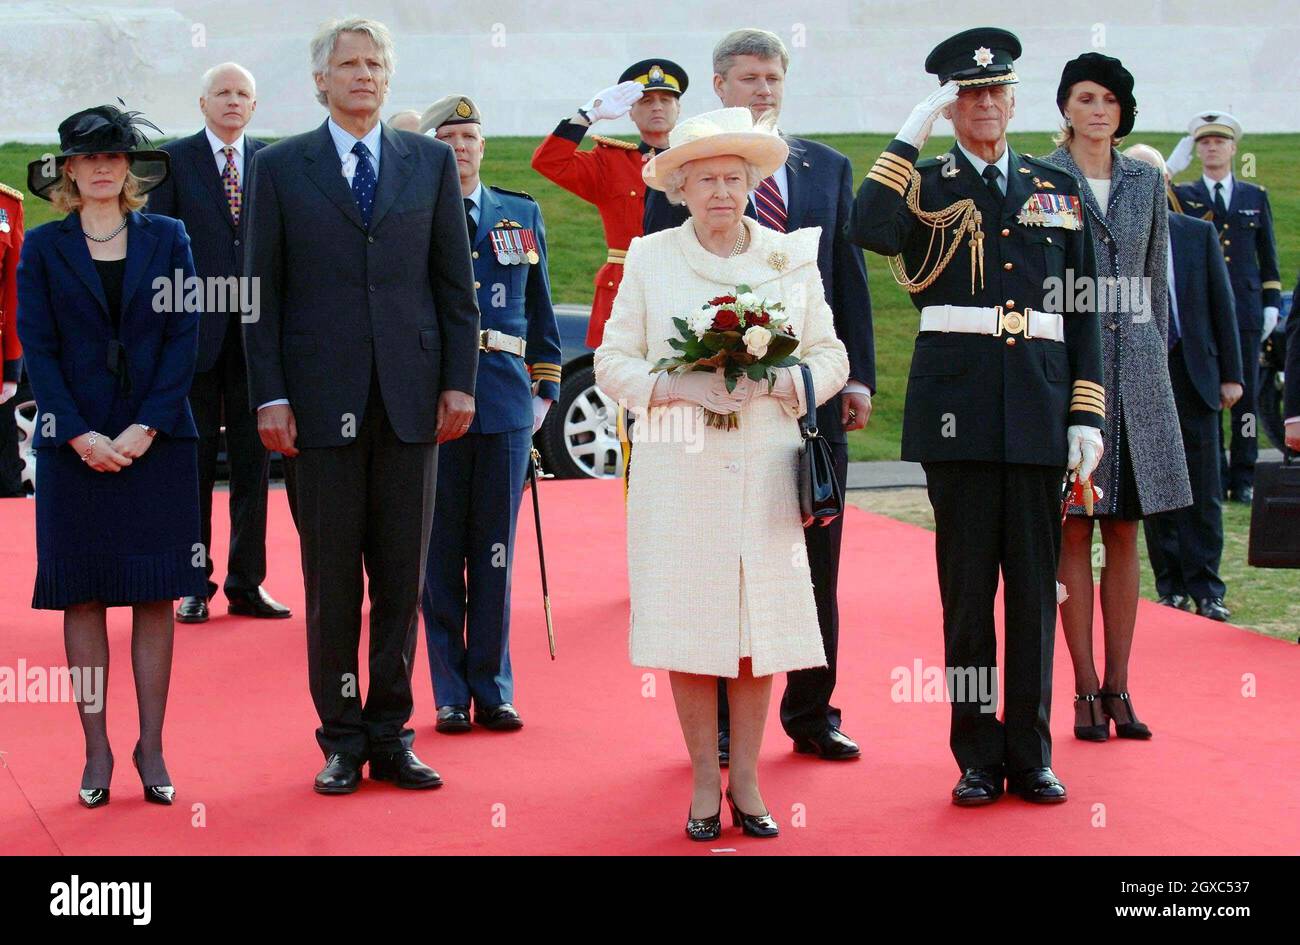 Königin Elizabeth II. Und Prinz Philip, Herzog von Edinburgh, werden von dem französischen Premierminister Dominique de Villepin (links von Queen), seiner Frau Marie-Laure (rechts in Baskenmütze) und dem kanadischen Premierminister Stephen Harper (hinter Queen) begleitet. Und seine Frau Laureen (links), die während einer Zeremonie anlässlich des 90. Jahrestages der Schlacht von Vimy Ridge, bei der mehr als 3,500 kanadische Truppen getötet wurden, am 9. April 2007 in Nordfrankreich zur Kenntnis genommen werden. Stockfoto